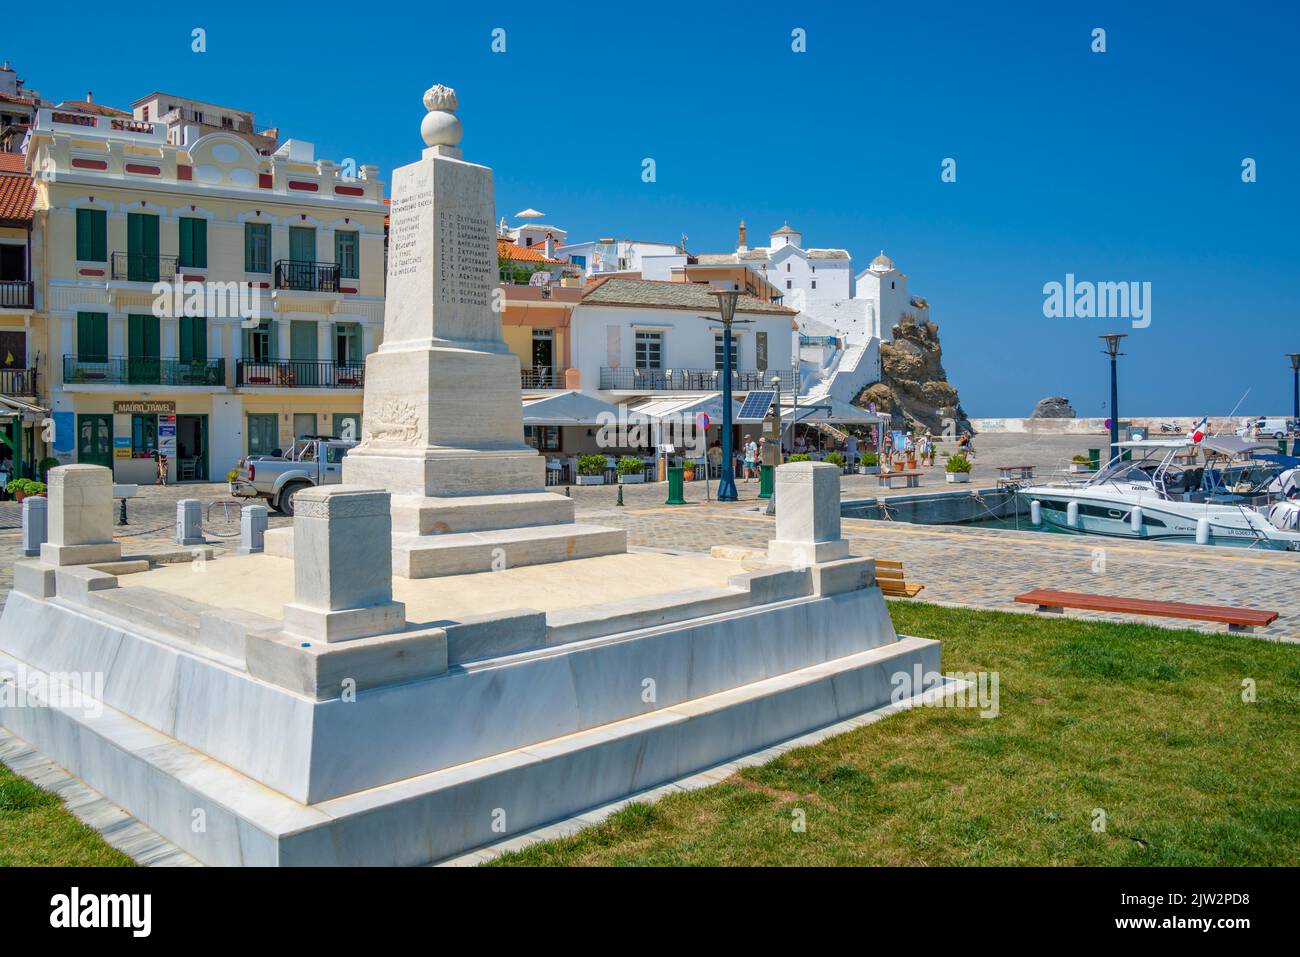 Vue sur la ville et le mémorial surplombant le port, la ville de Skopelos, l'île de Skopelos, les îles Sporades, les îles grecques, Grèce, Europe Banque D'Images